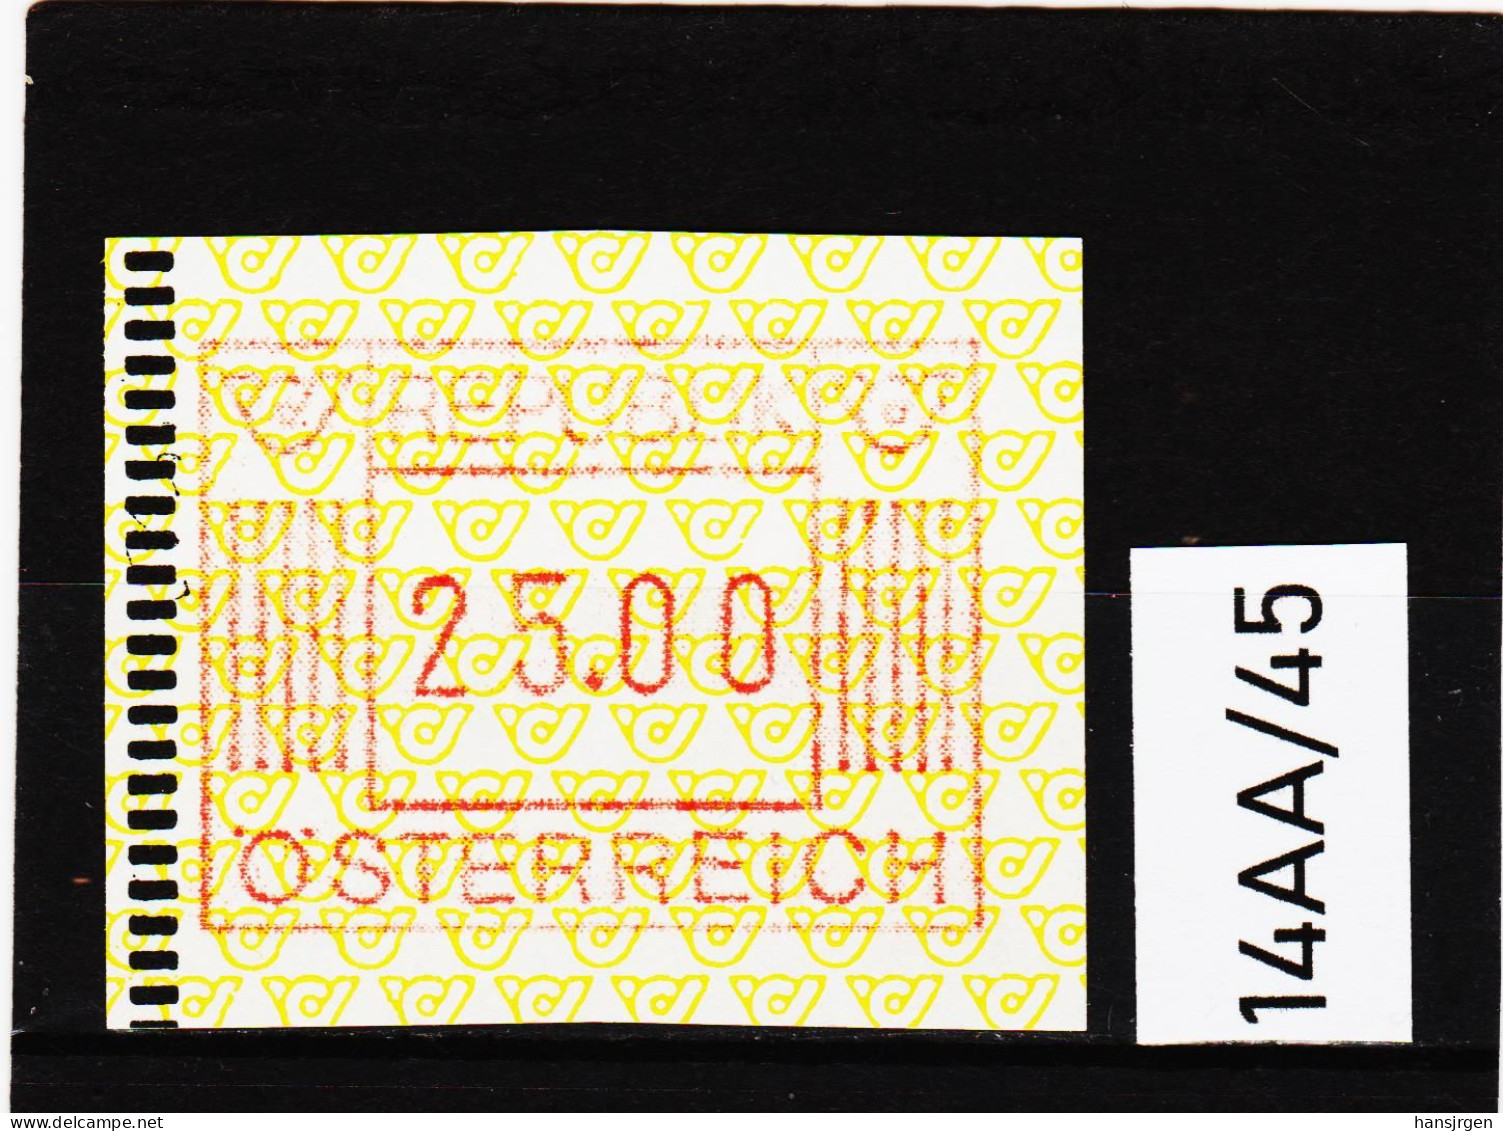 14AA/45  ÖSTERREICH 1983 AUTOMATENMARKEN 1. AUSGABE  25,00 SCHILLING   ** Postfrisch - Machine Labels [ATM]